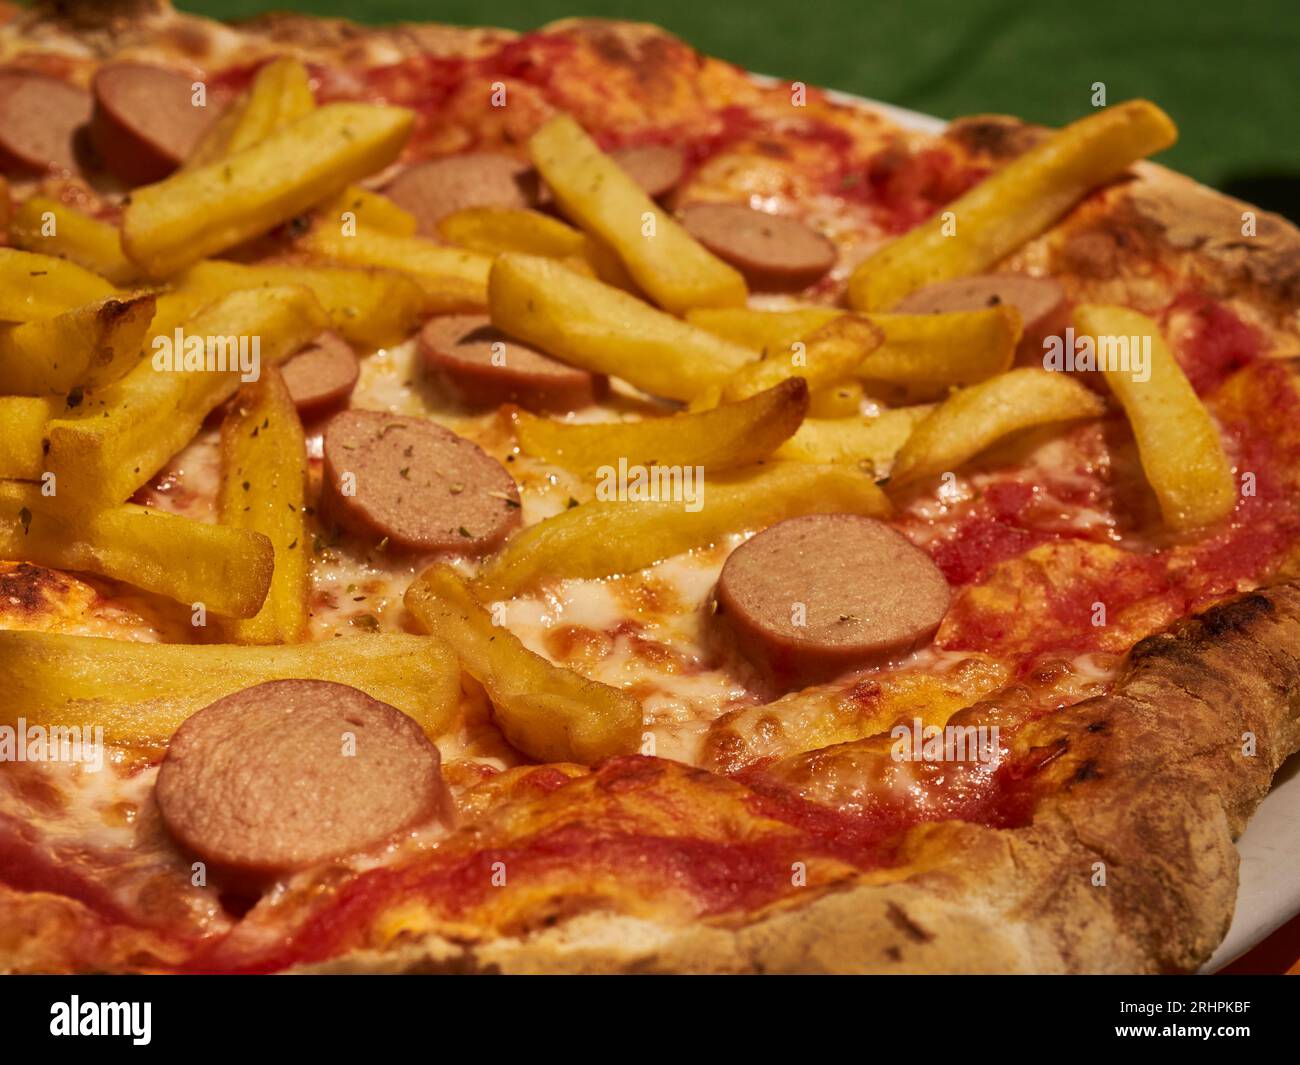 Una pizza condita con patatine fritte e fette di hot dog, chiamata umoristicamente "pizza americana", servita a Cuneo, Piemonte, Italia Foto Stock